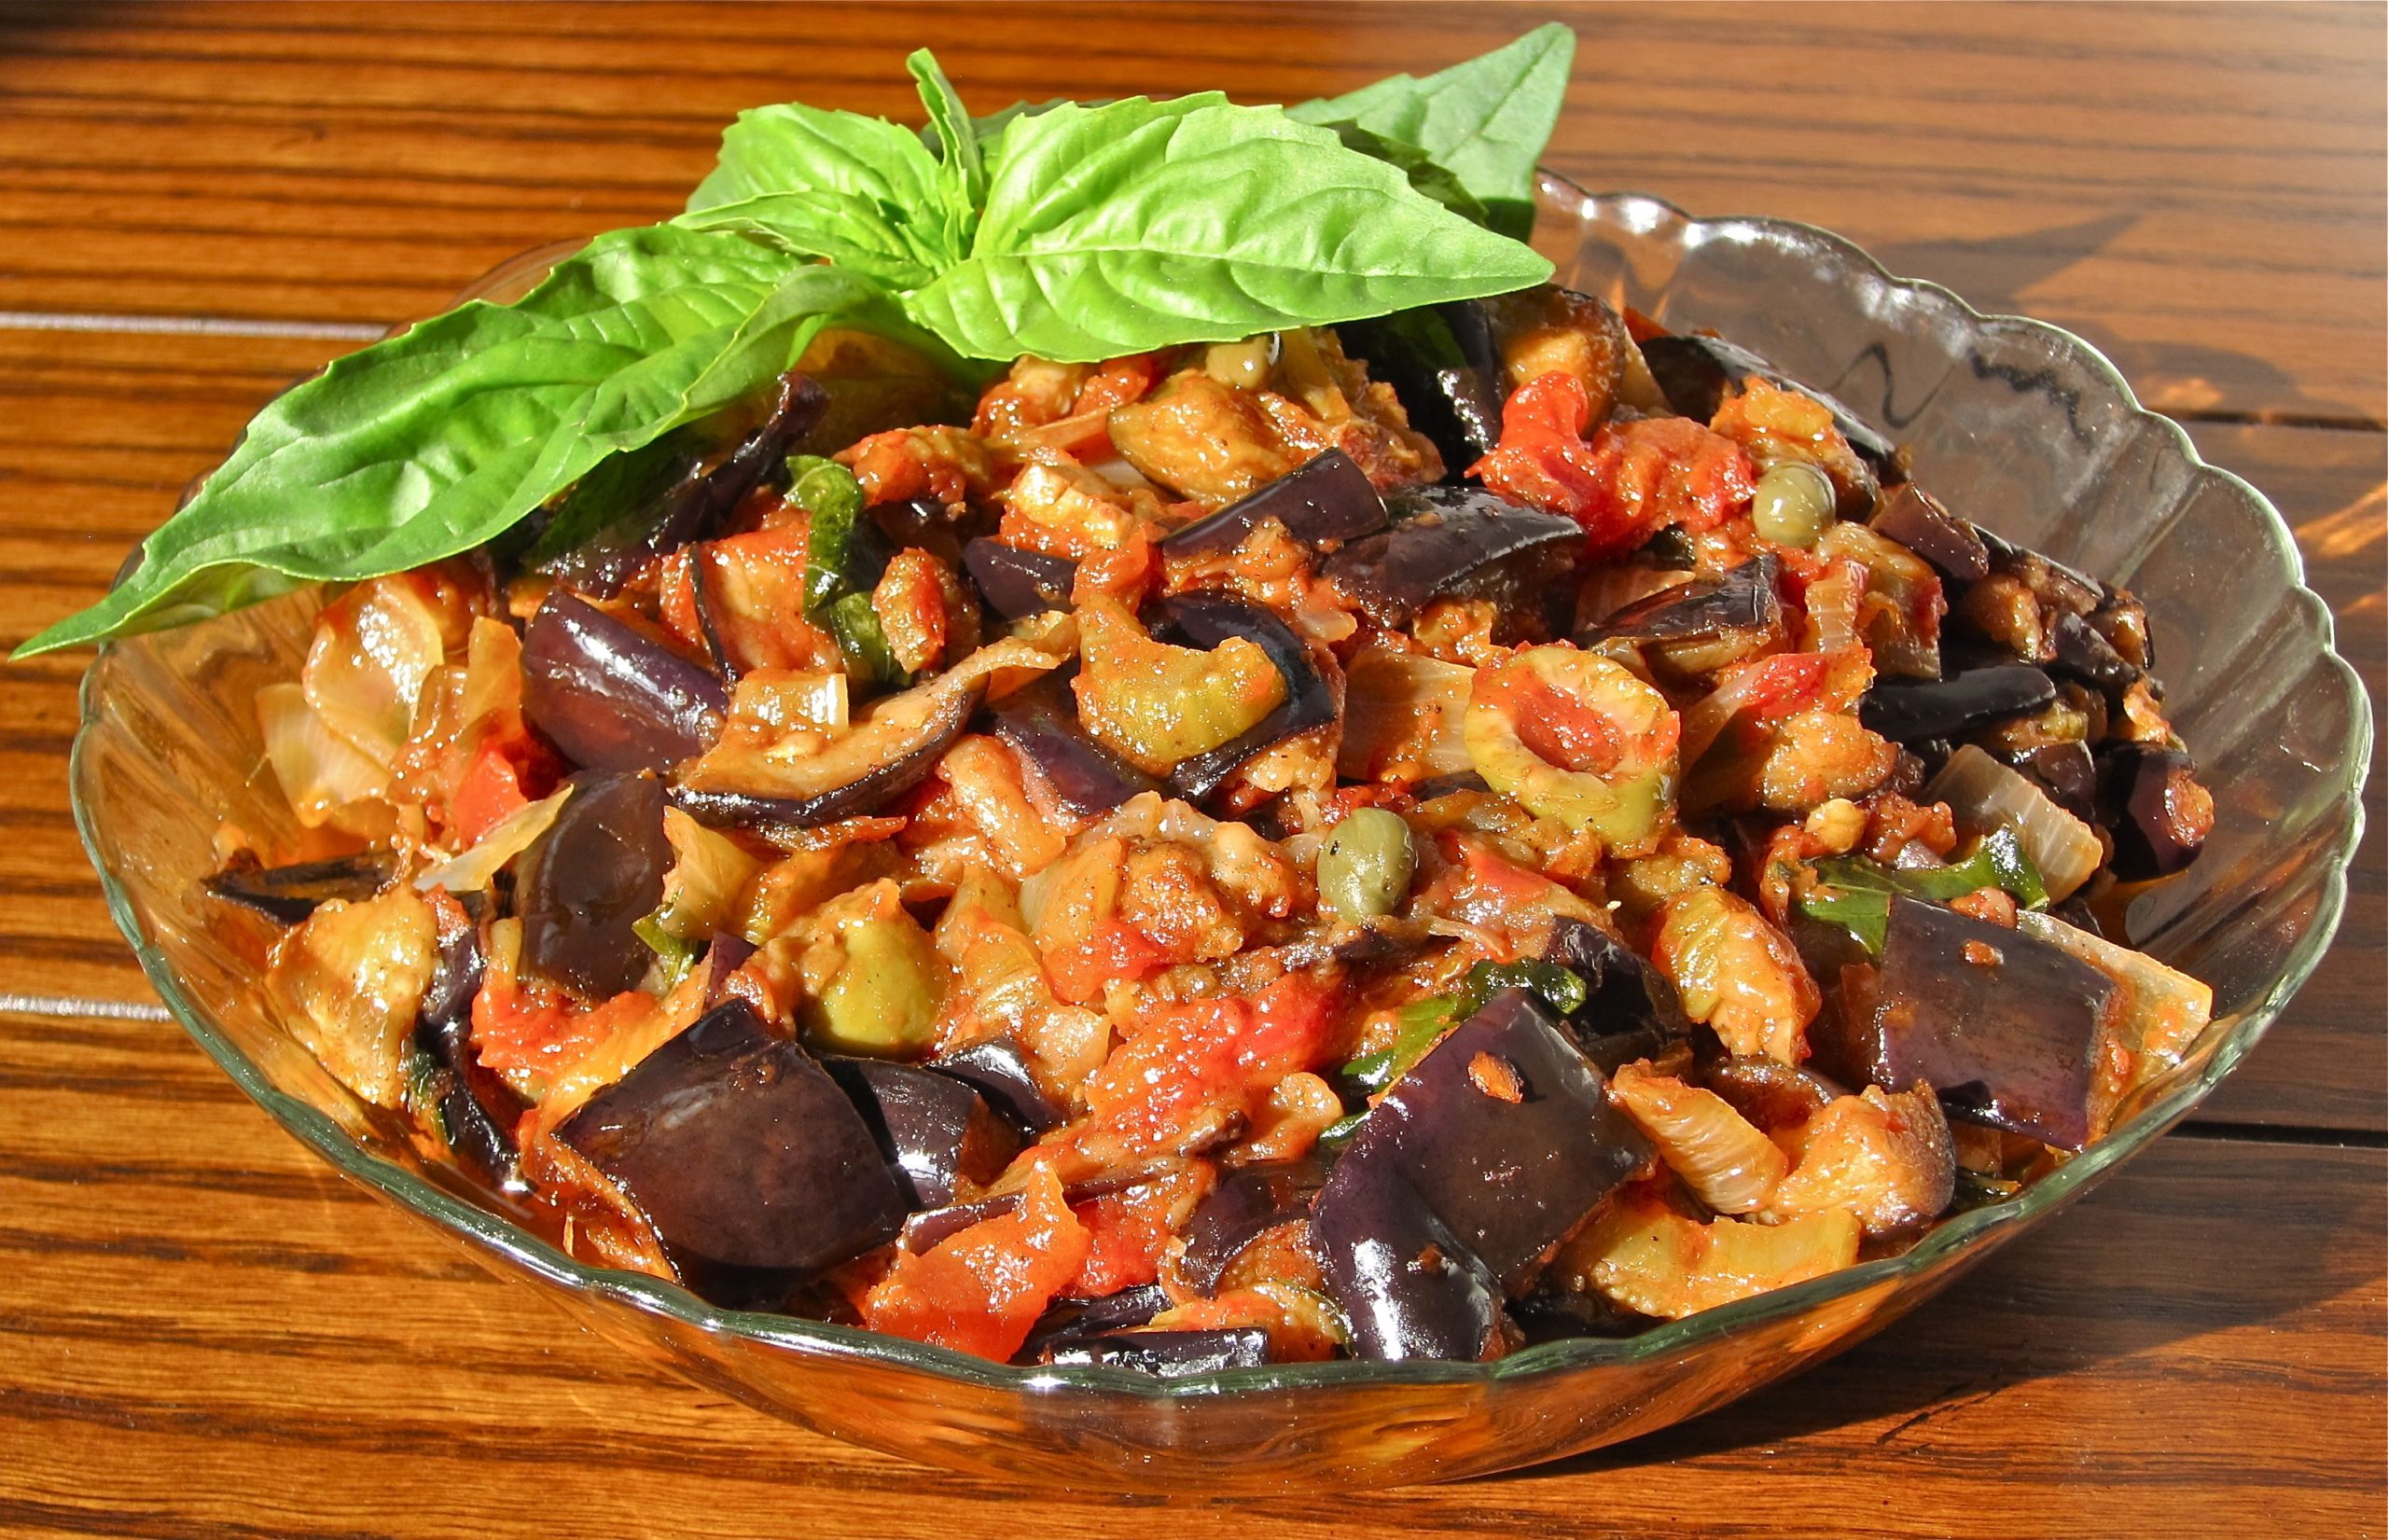 Caponata Siciliana (Eggplant and Vegetable Cooked Salad)